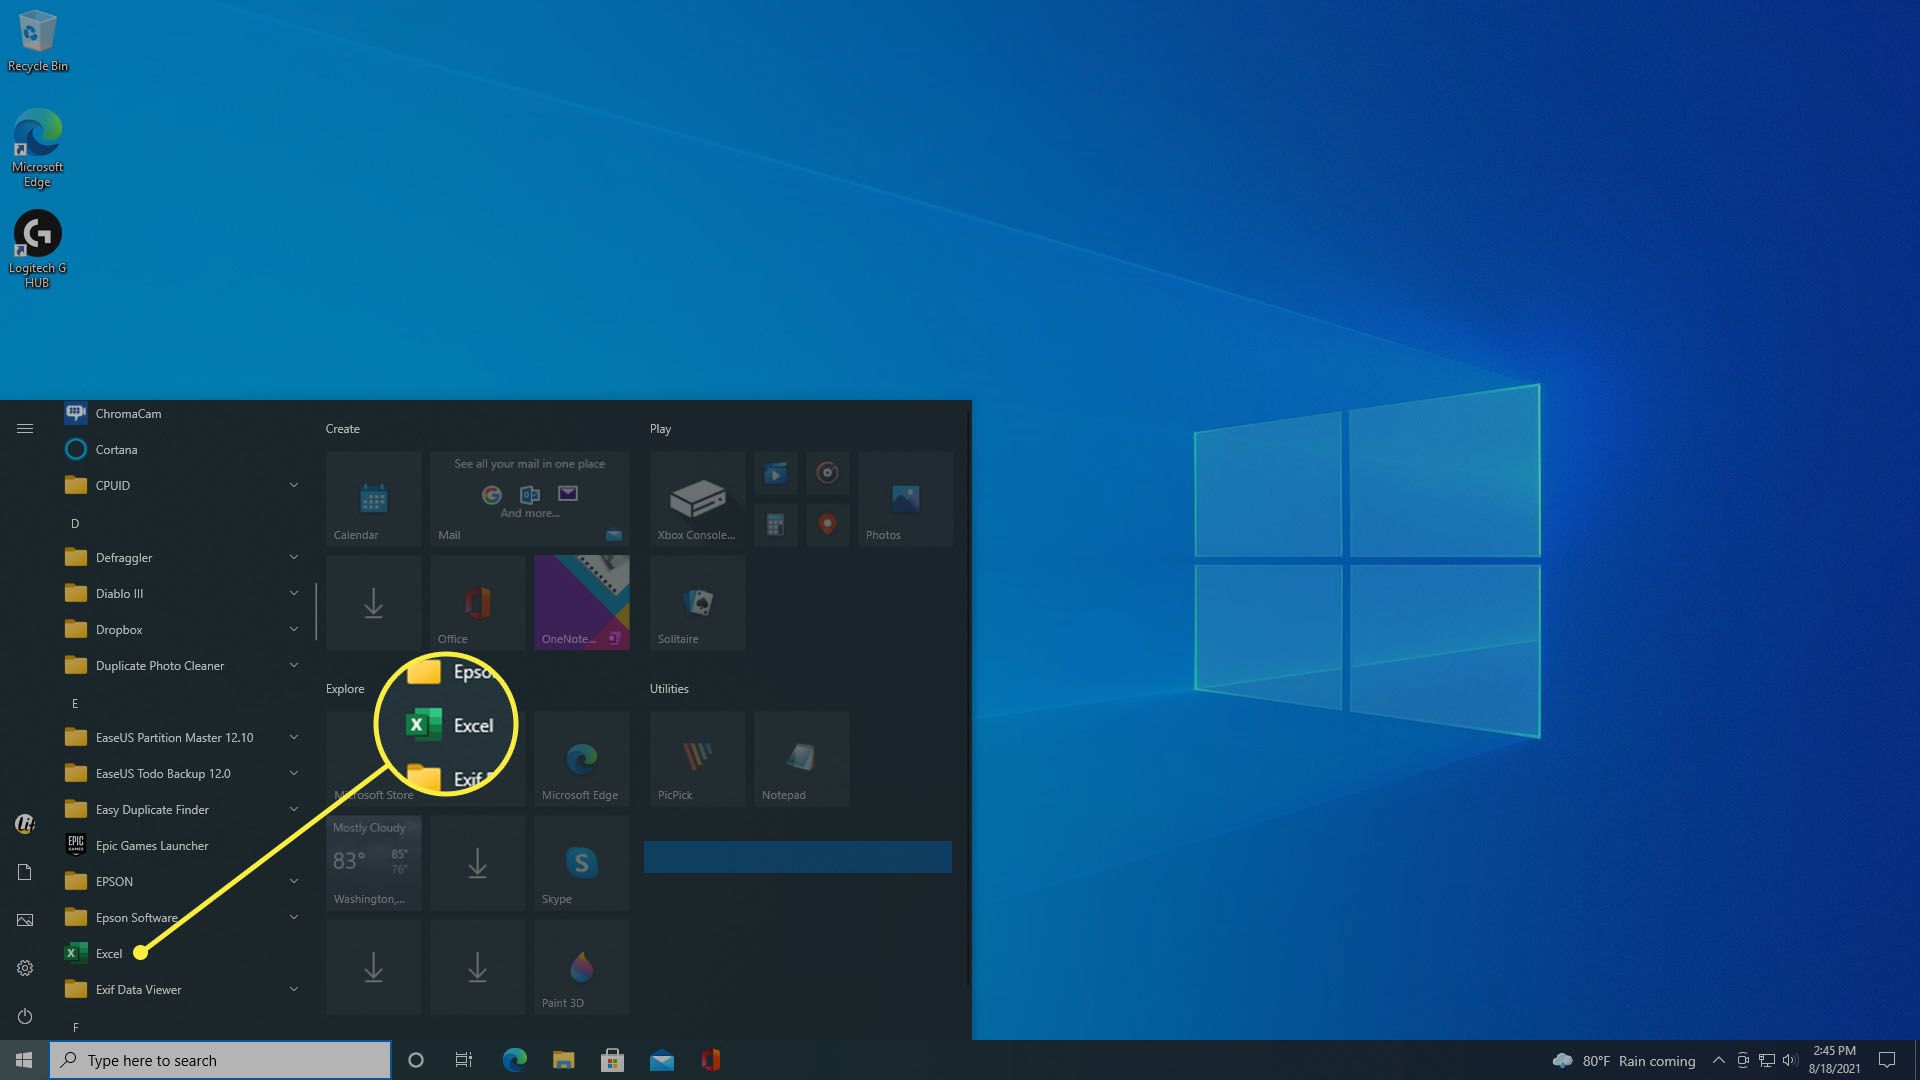 Tarkastele ohjelmia Windows 10:n Käynnistä-valikossa.